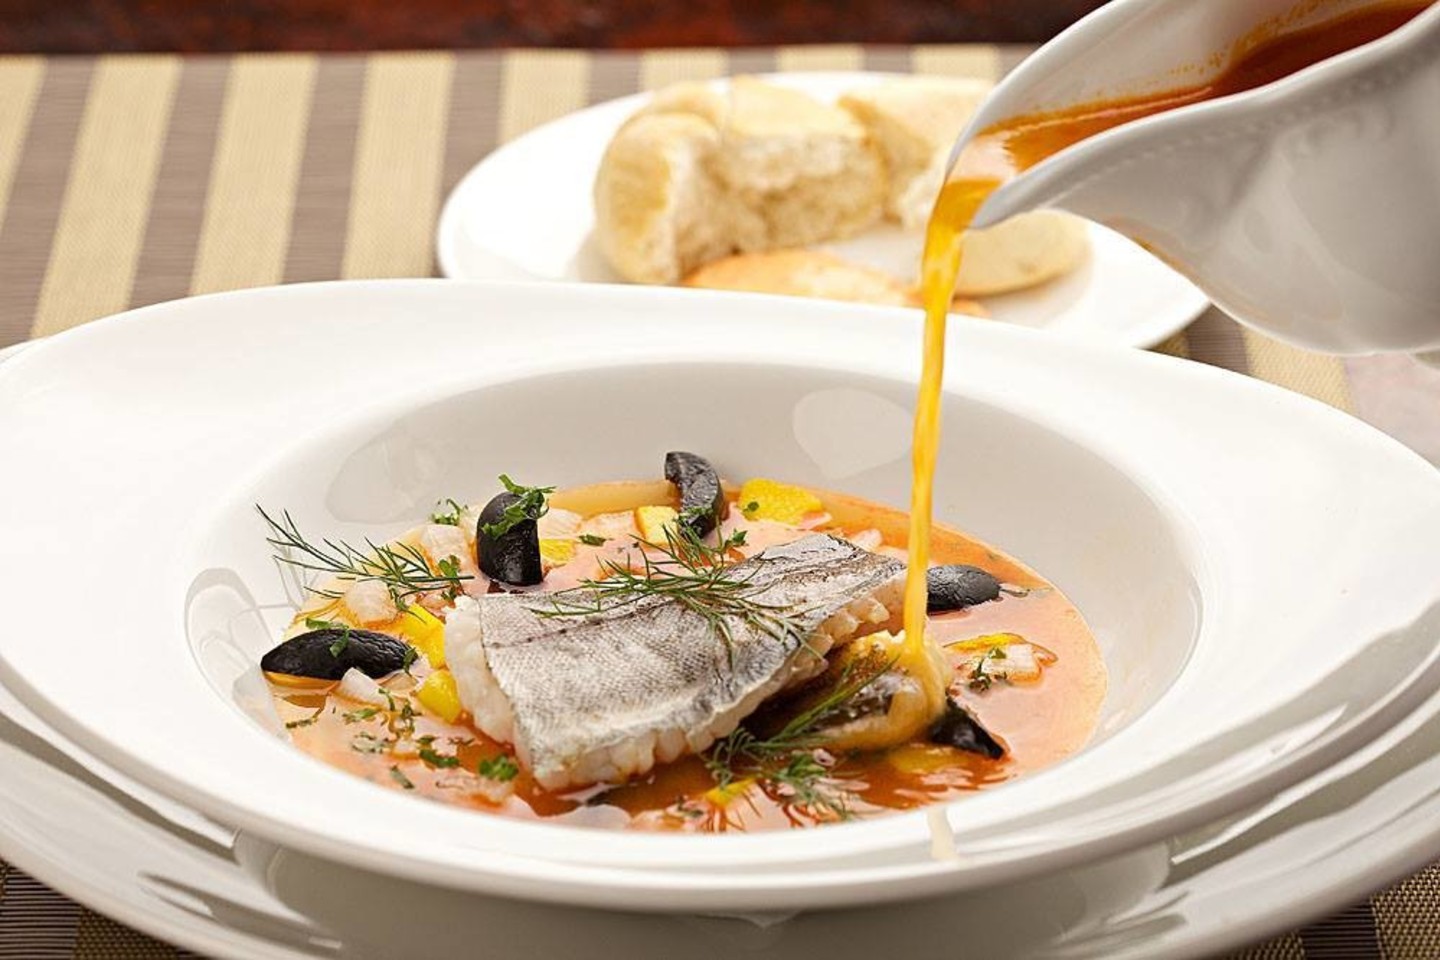 Vienas iš patiekalų, kuriuos bus galima paragauti per pokylinius pietus kaunietiškai, bus žuvies sriuba.<br>Restorano bistro „Mykolo 4“ nuotr.